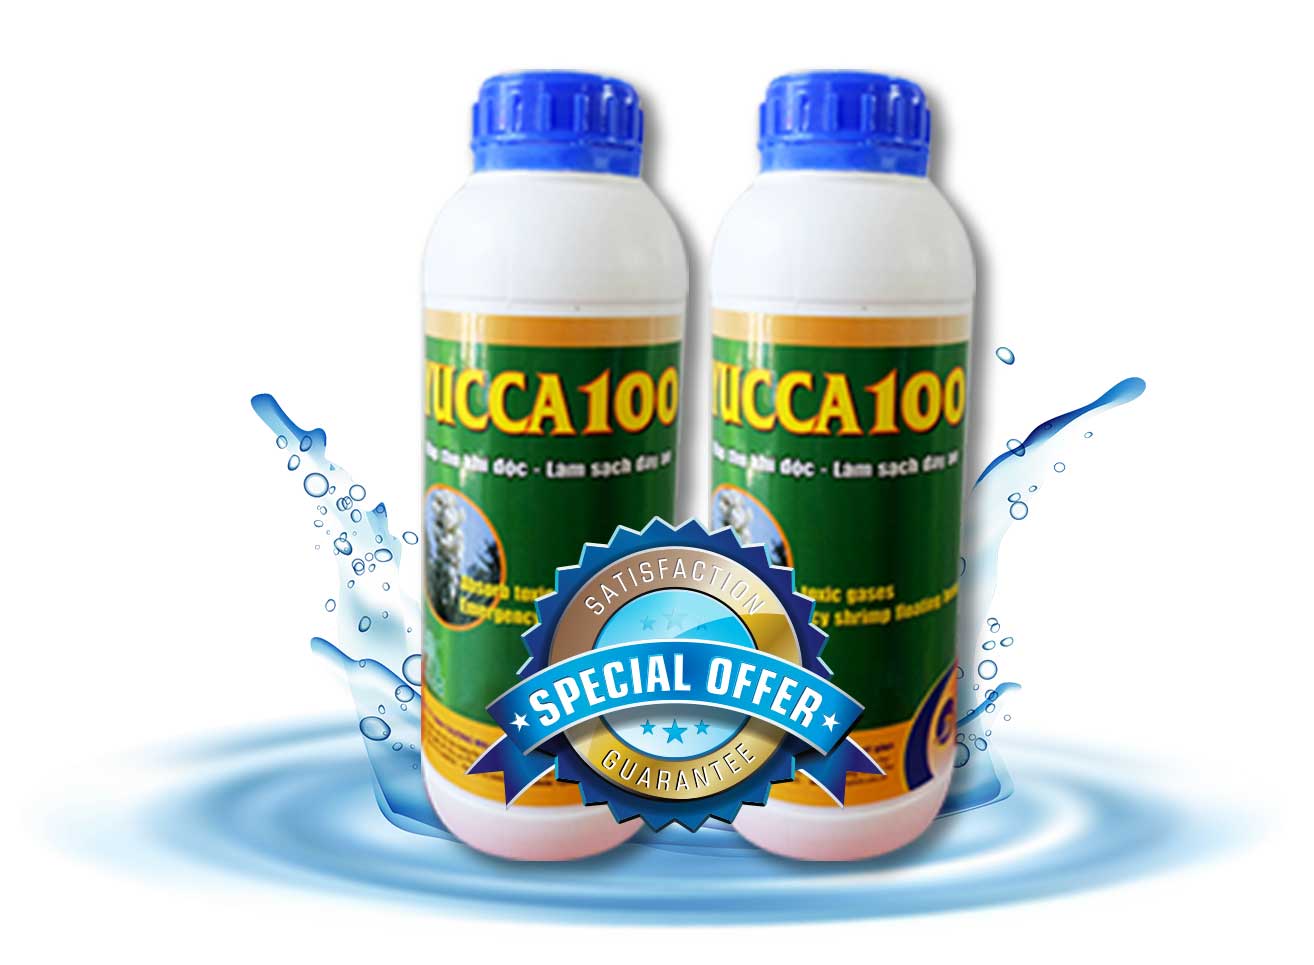 YUCCA 100 - Hấp thụ khí độc làm sạch nước ao tôm nhanh và hiệu quả